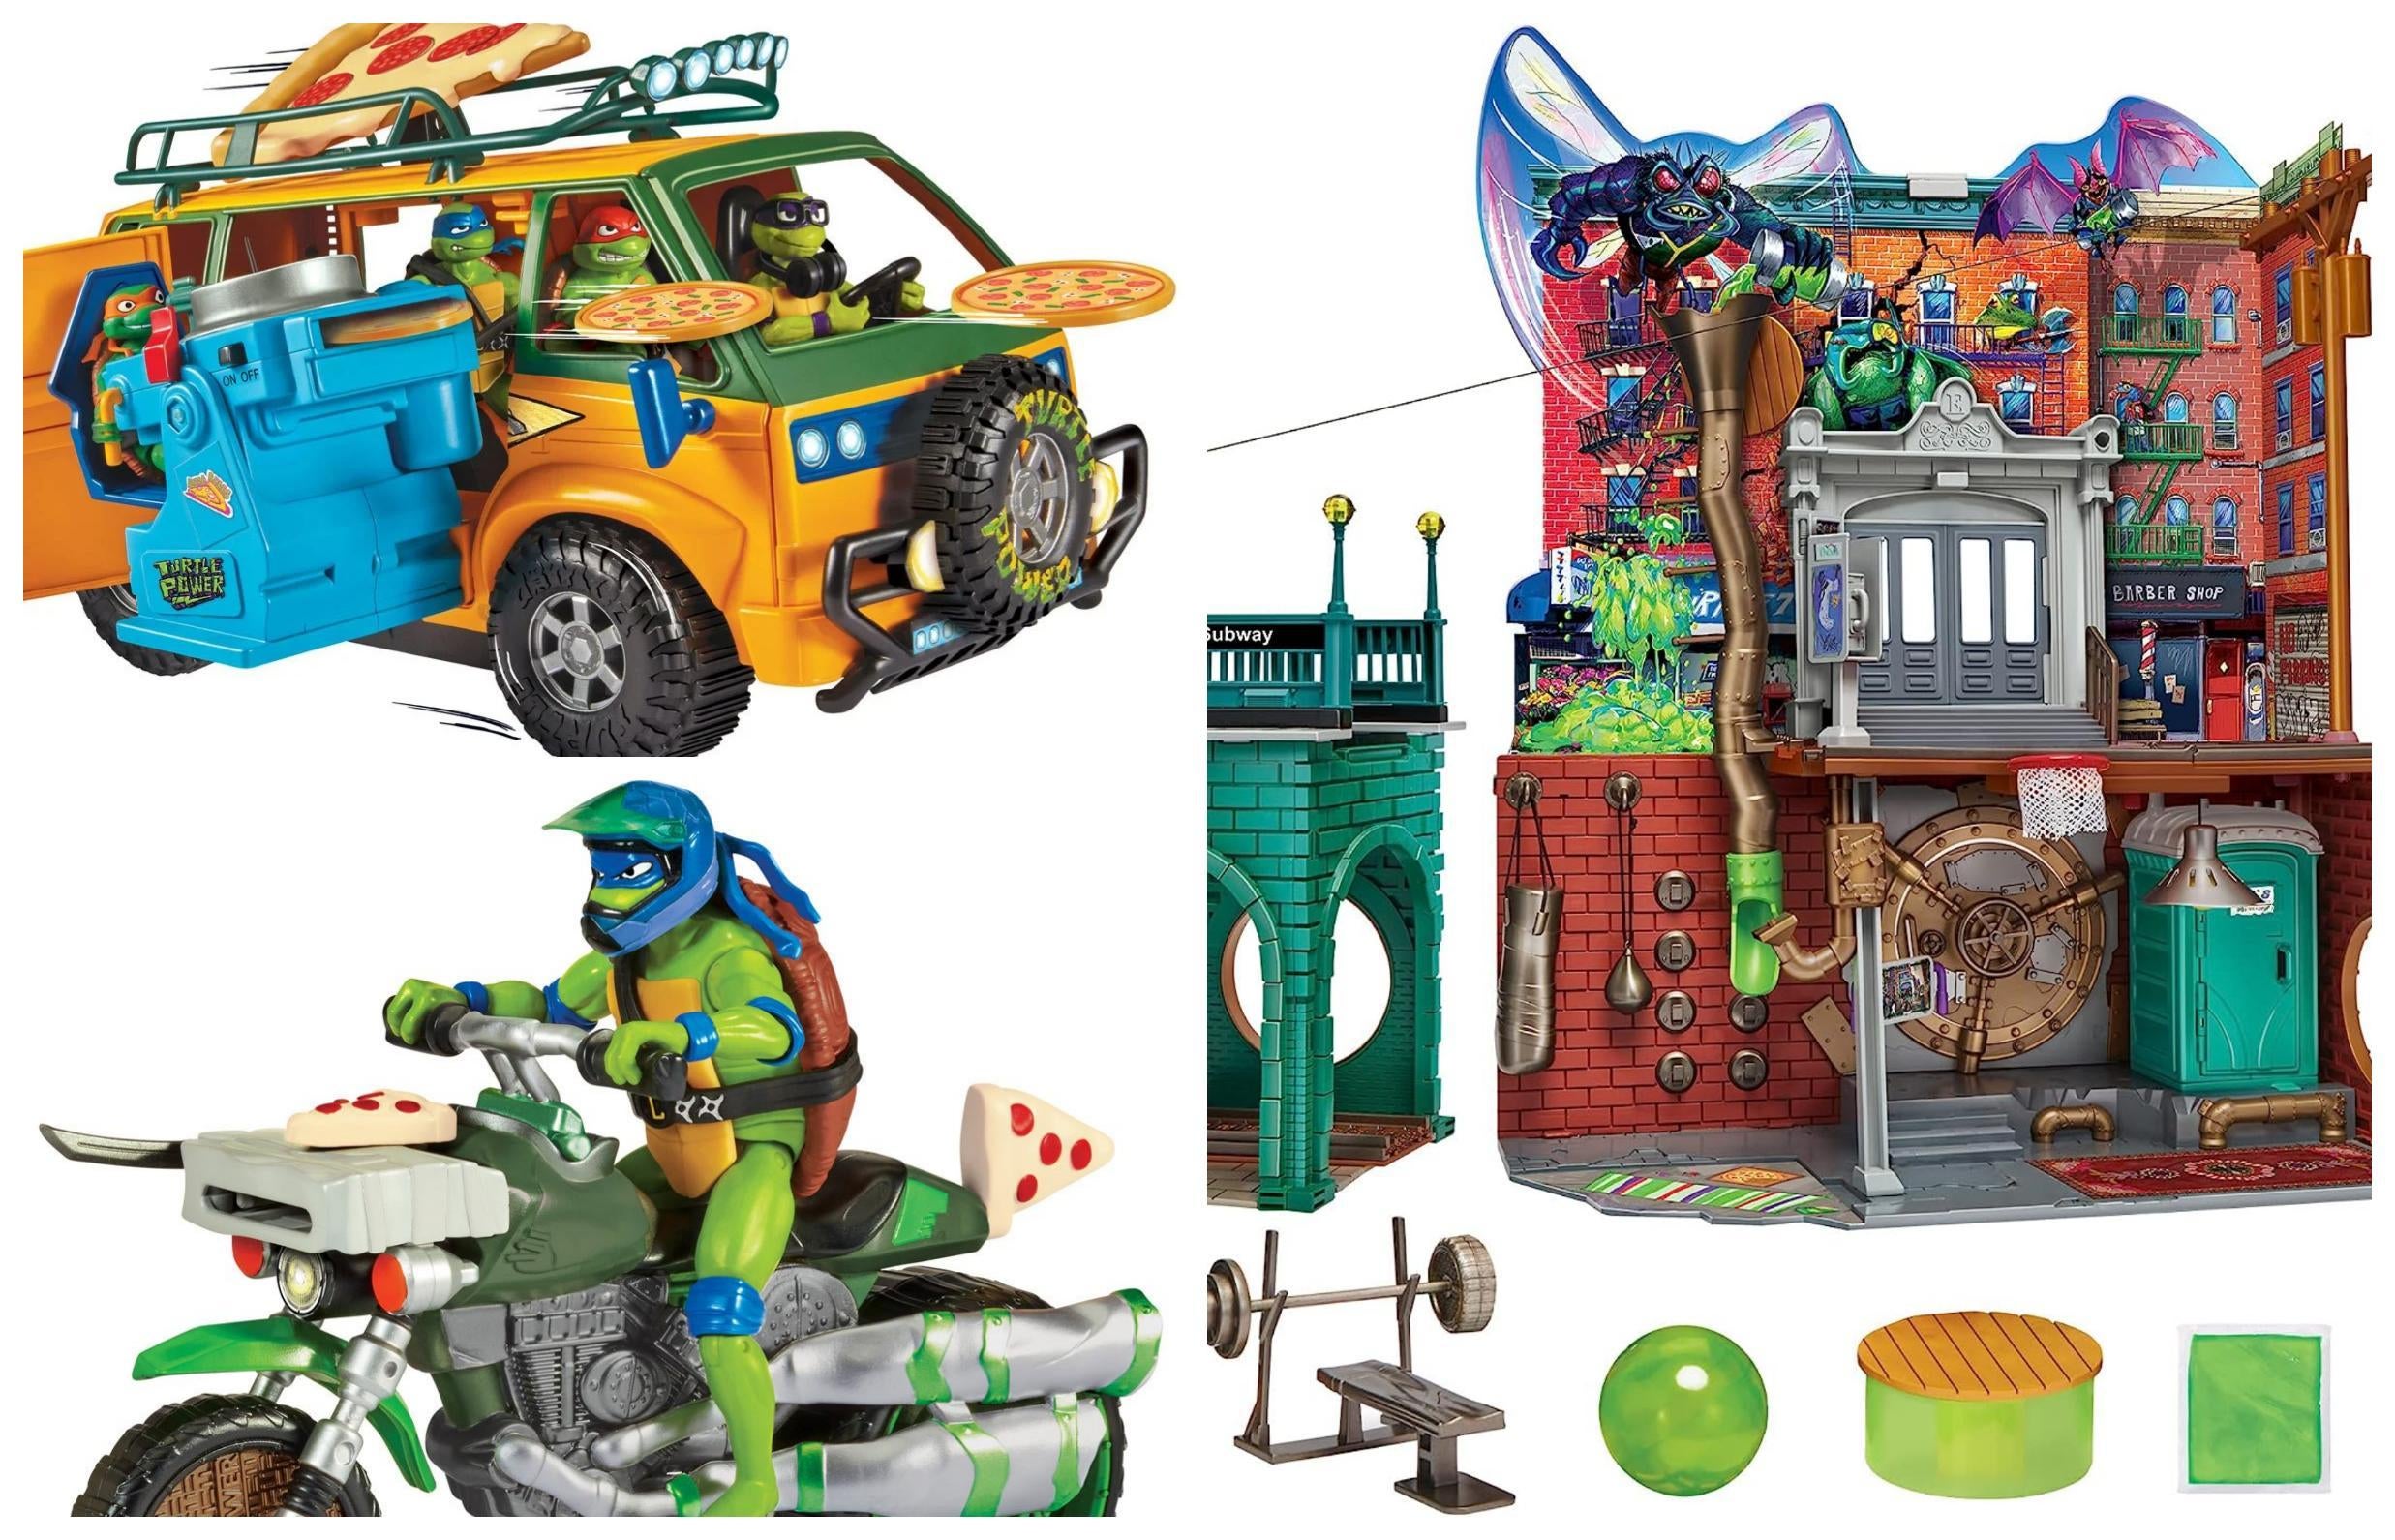 Teenage Mutant Ninja Turtles Mutant Mayhem Toys Are On Sale Now